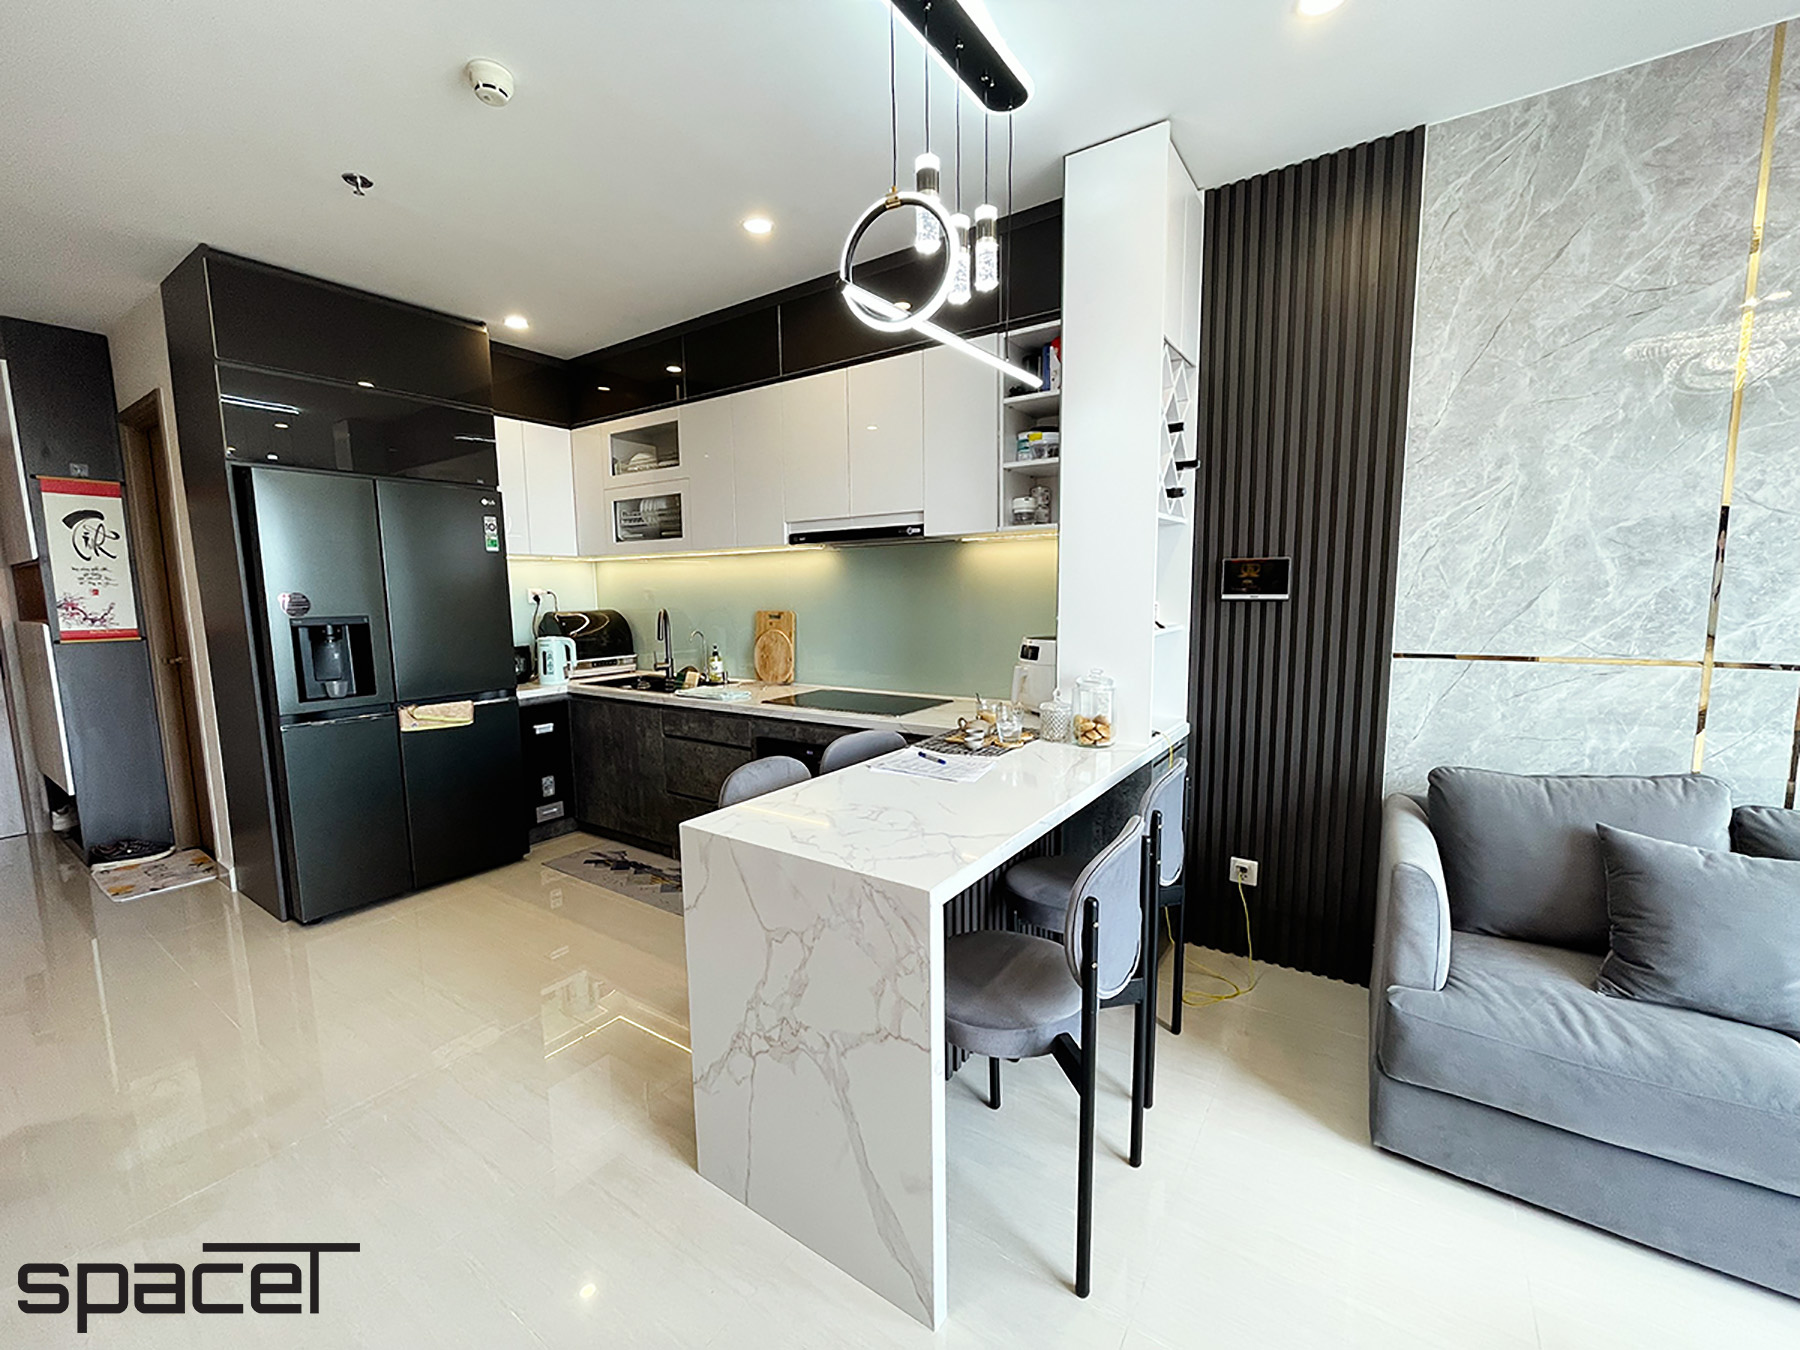 Phòng bếp, phòng ăn, phong cách Hiện đại Modern, hoàn thiện nội thất, căn hộ The Origami Vinhomes Quận 9